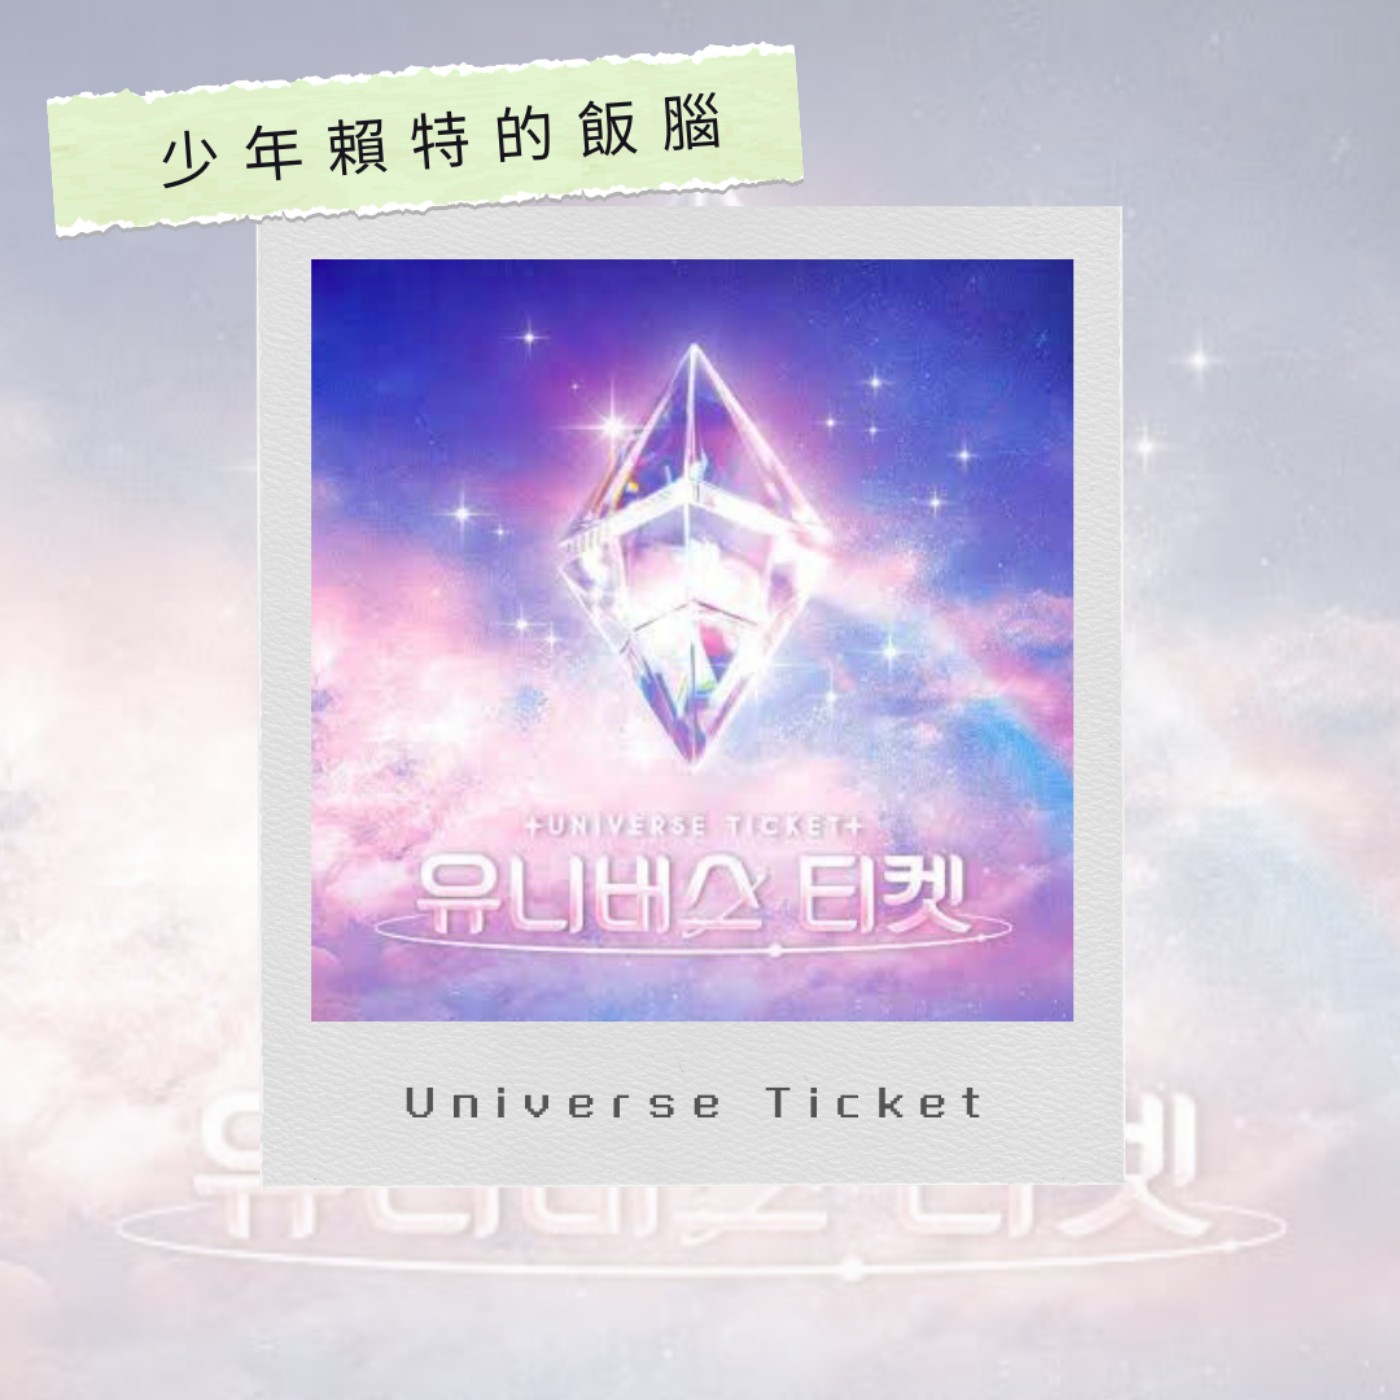 EP23 Universe Ticket終於決賽啦！UNIS出道成員正式公開！Universe Ticket 第十集